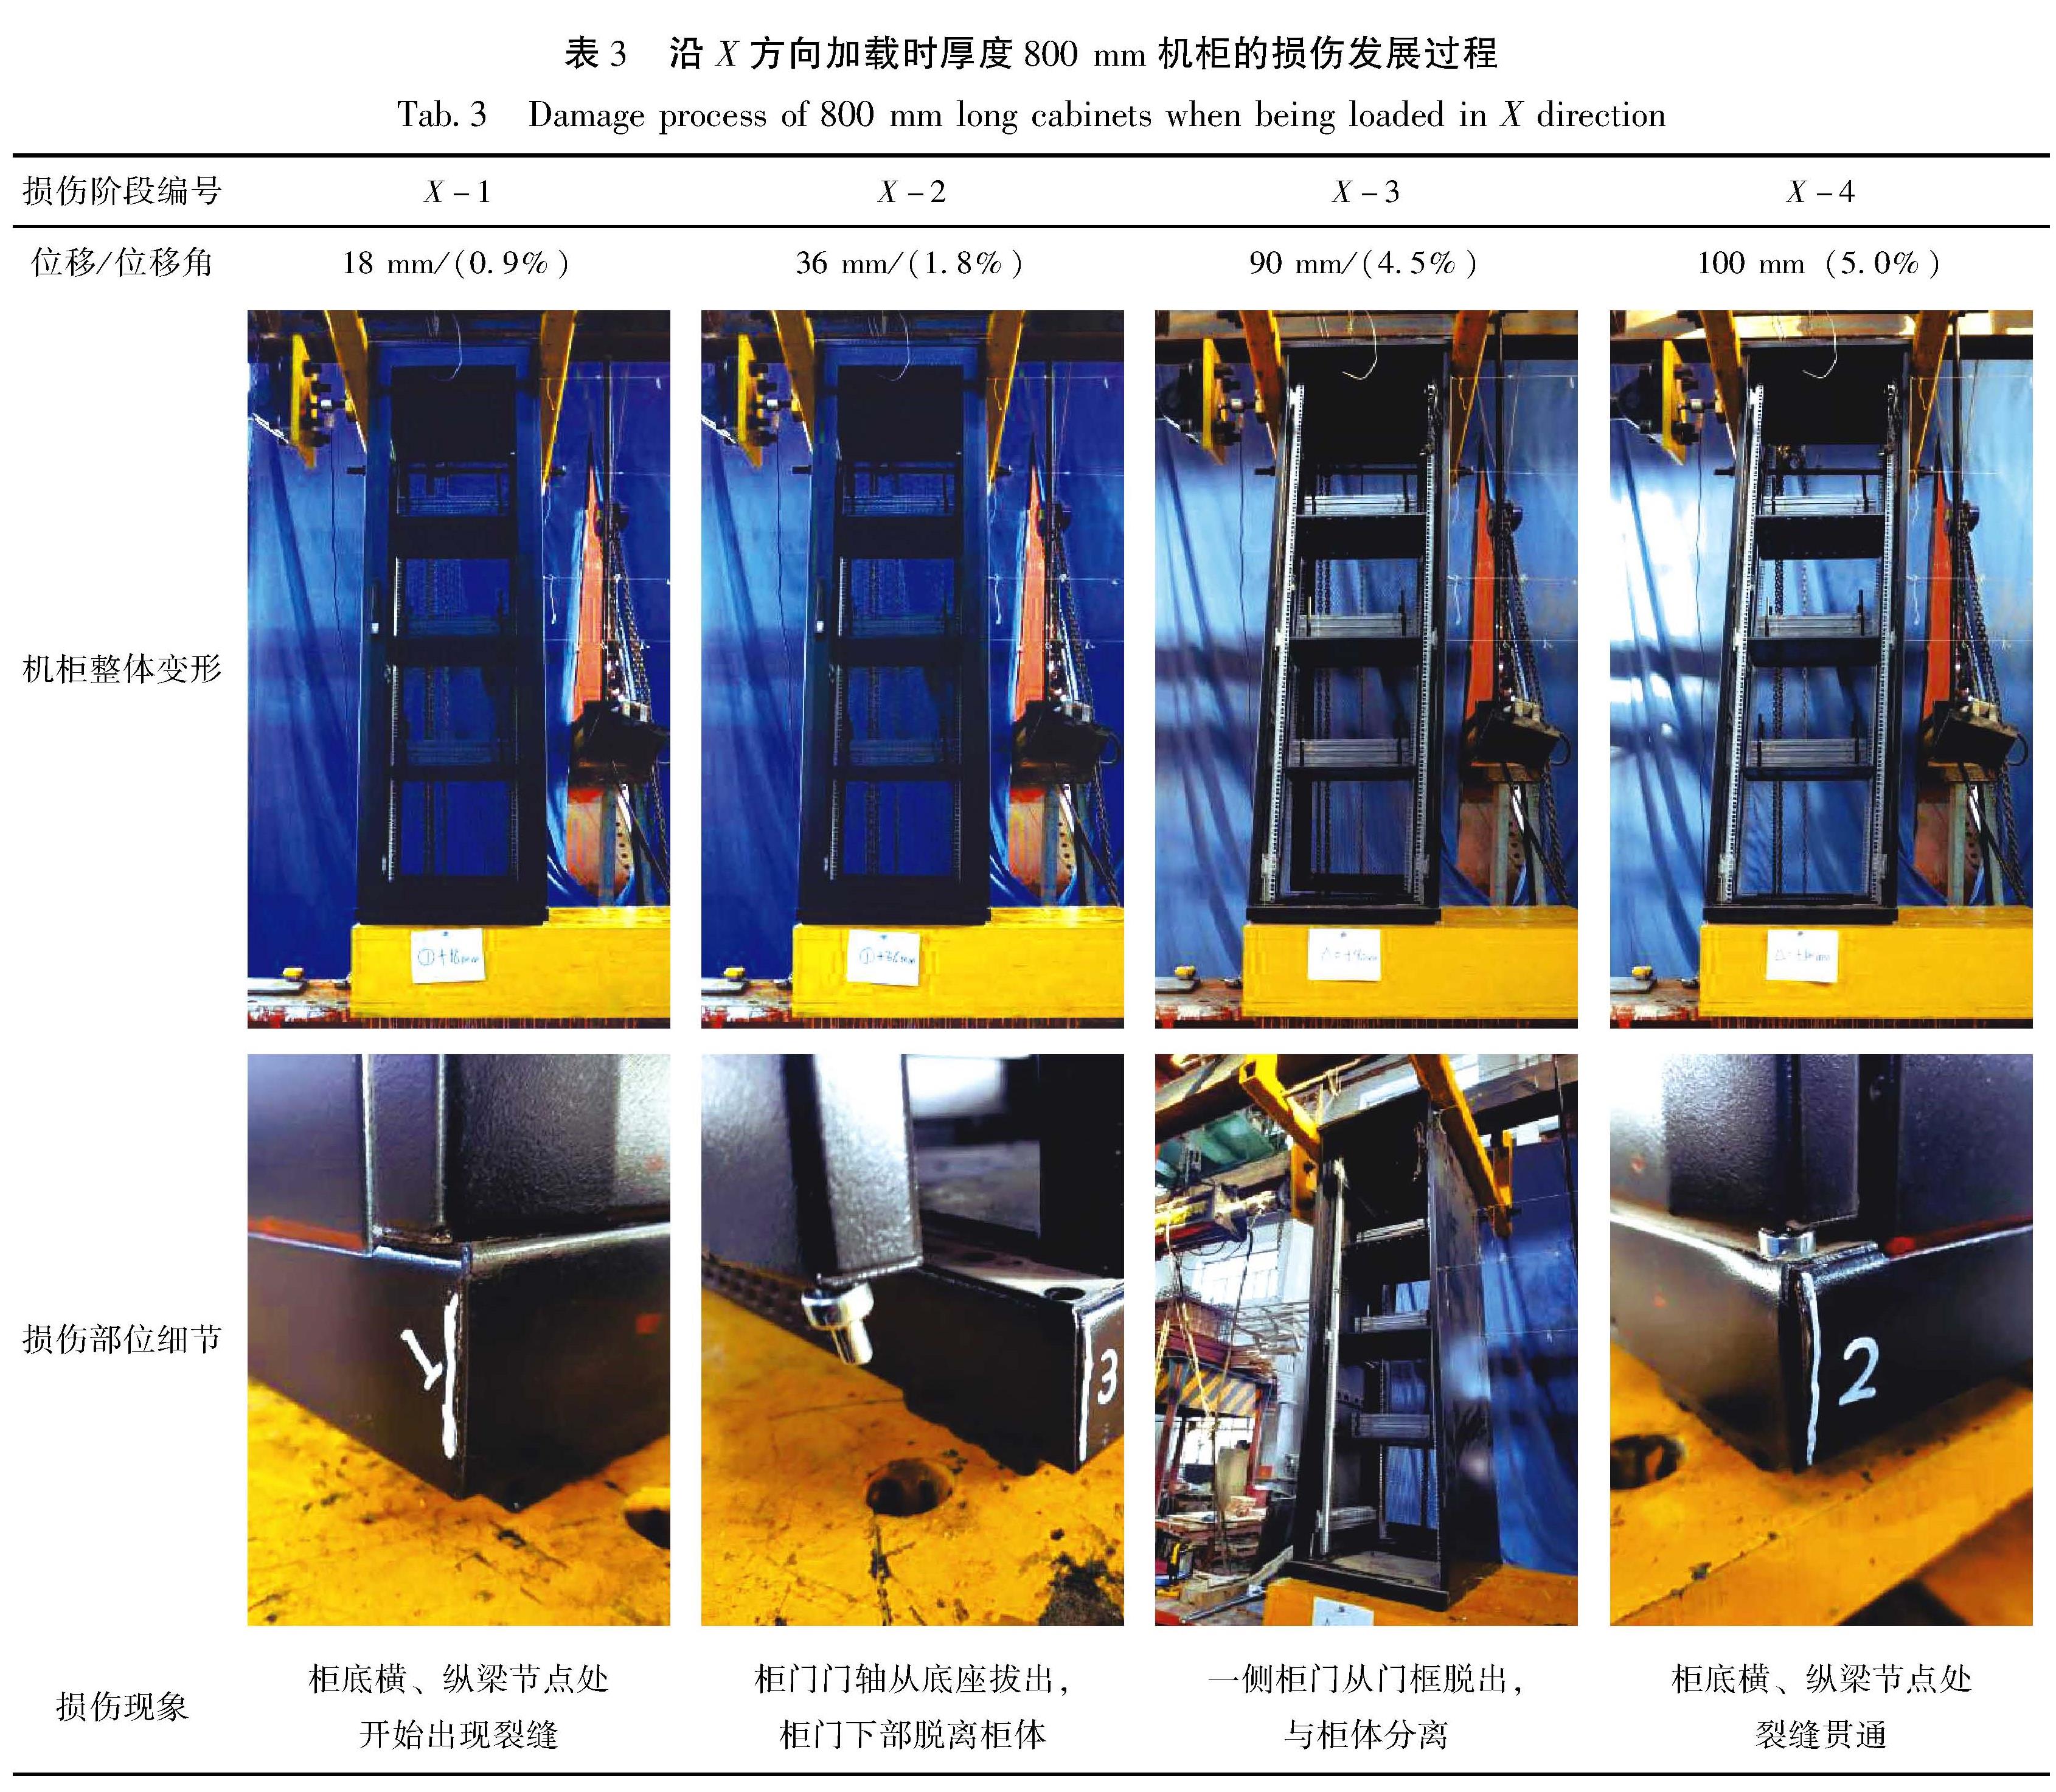 表3 沿X方向加载时厚度800 mm机柜的损伤发展过程<br/>Tab.3 Damage process of 800 mm long cabinets when being loaded in X direction